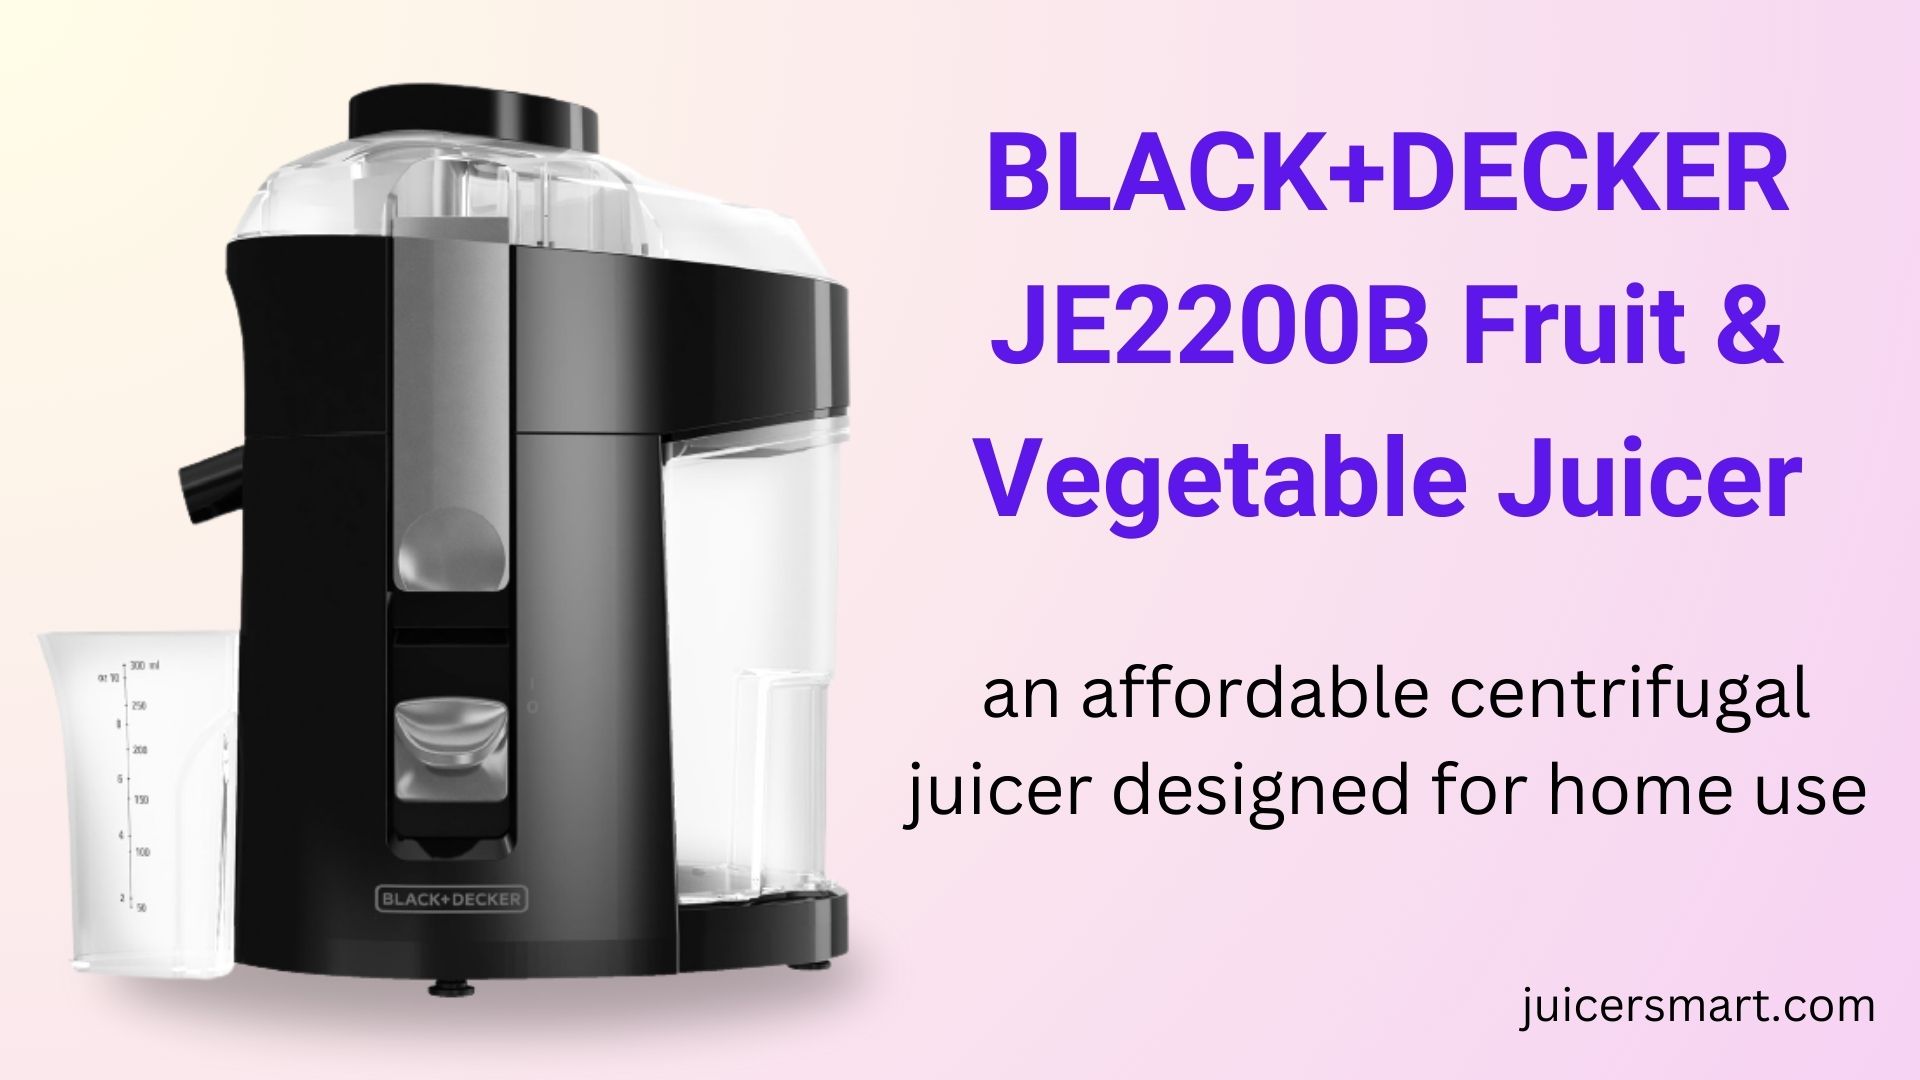 BLACK+DECKER JE2200B Fruit & Vegetable Juicer